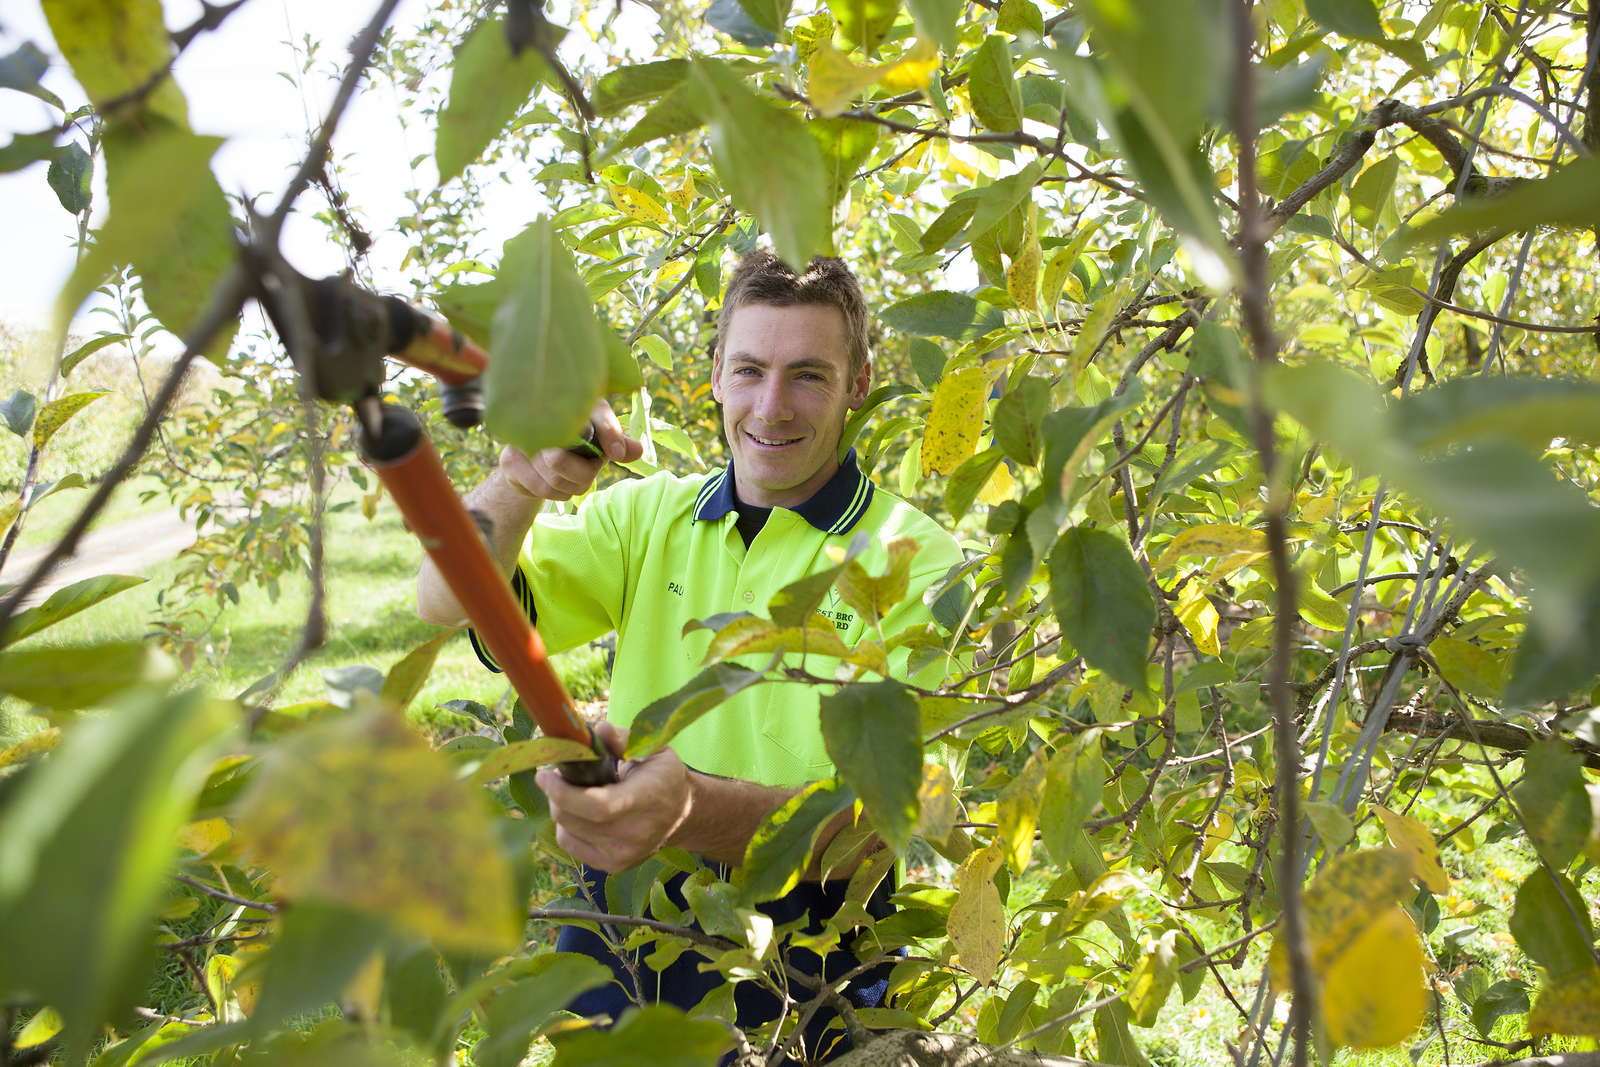 Obstbäume richtig schneiden: Anleitung vom Experten - Plantura